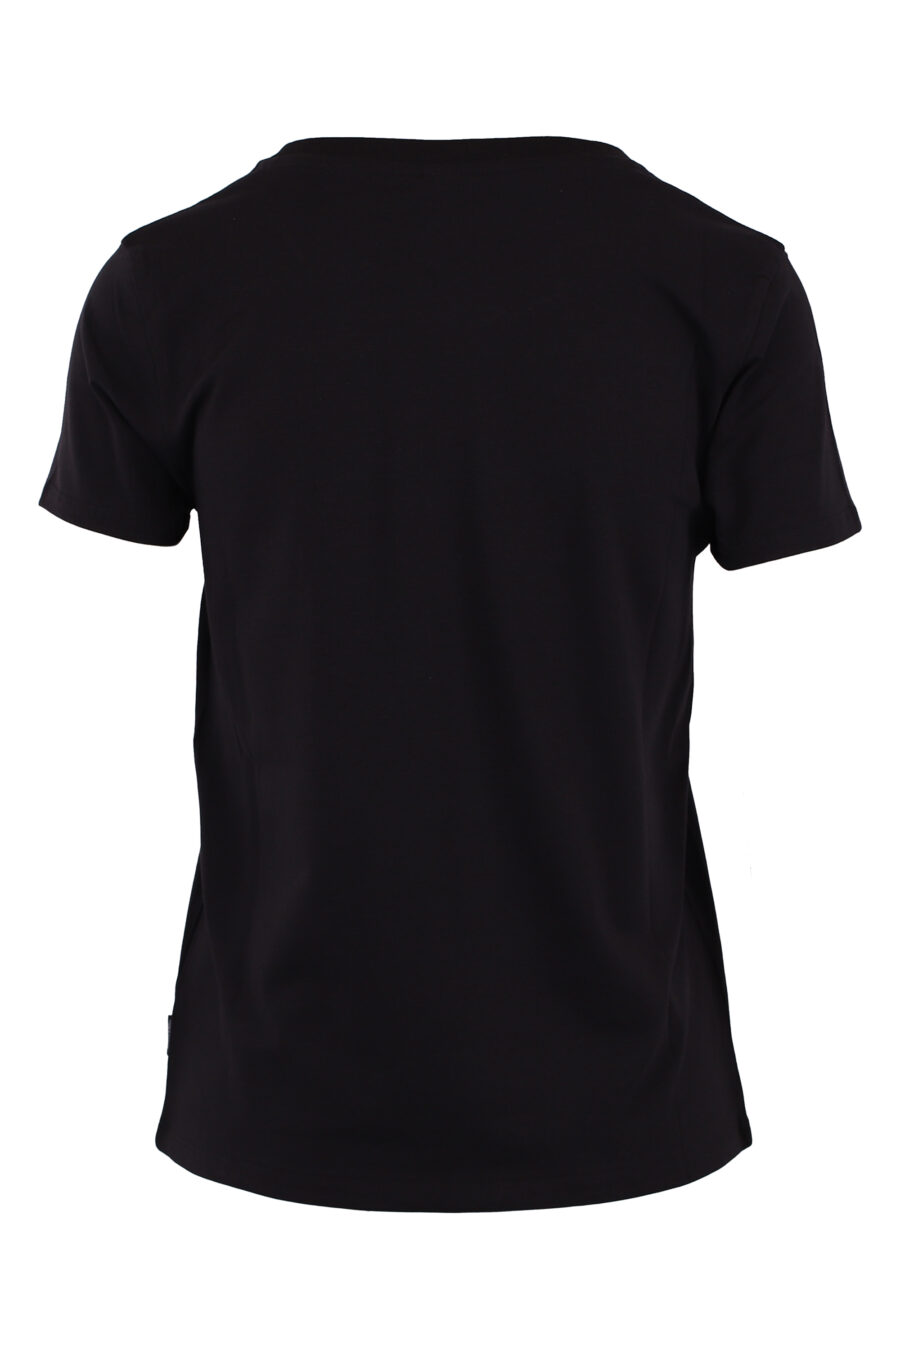 T-shirt preta com o logótipo de um pequeno urso - IMG 6203